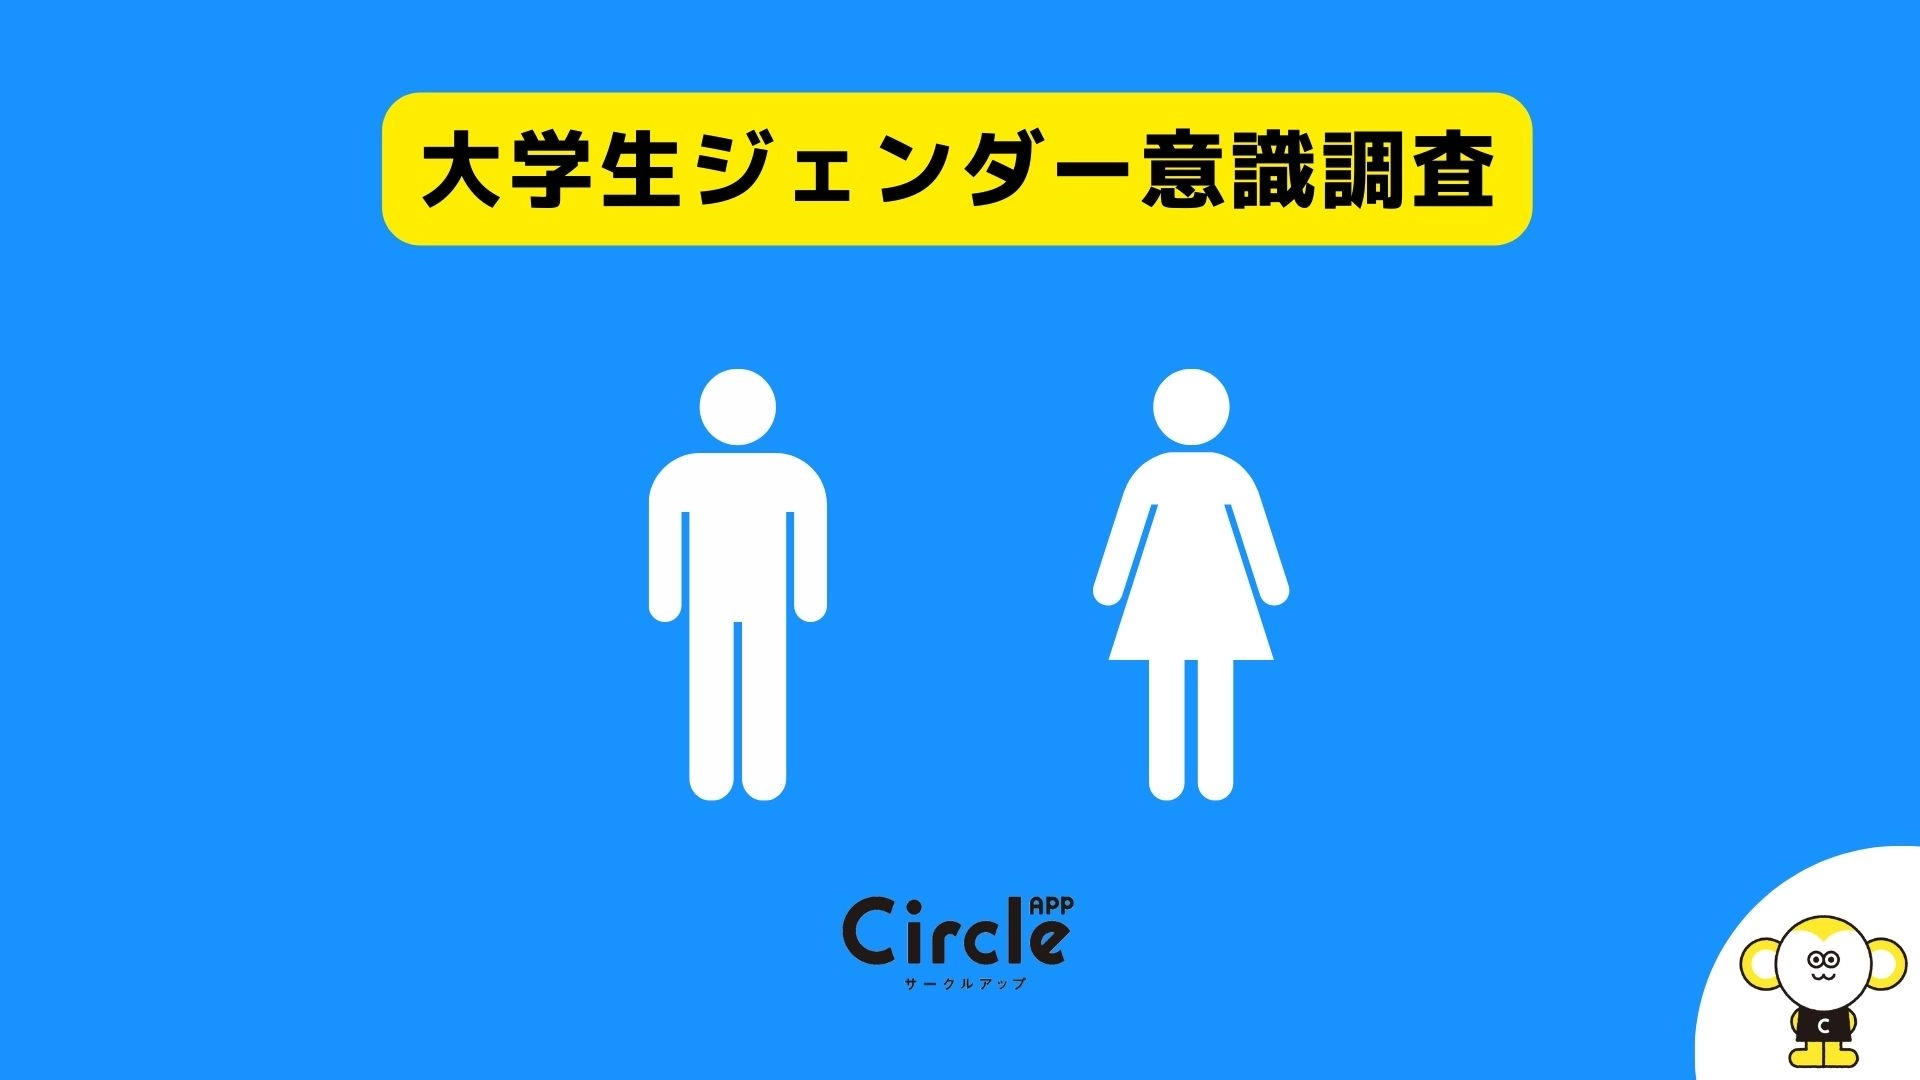 大学生のジェンダー問題への意識調査。「今の日本が男女平等だと思いますか？」という設問で「そう思う」と回答した男性は42％、女性は22％という結果に。